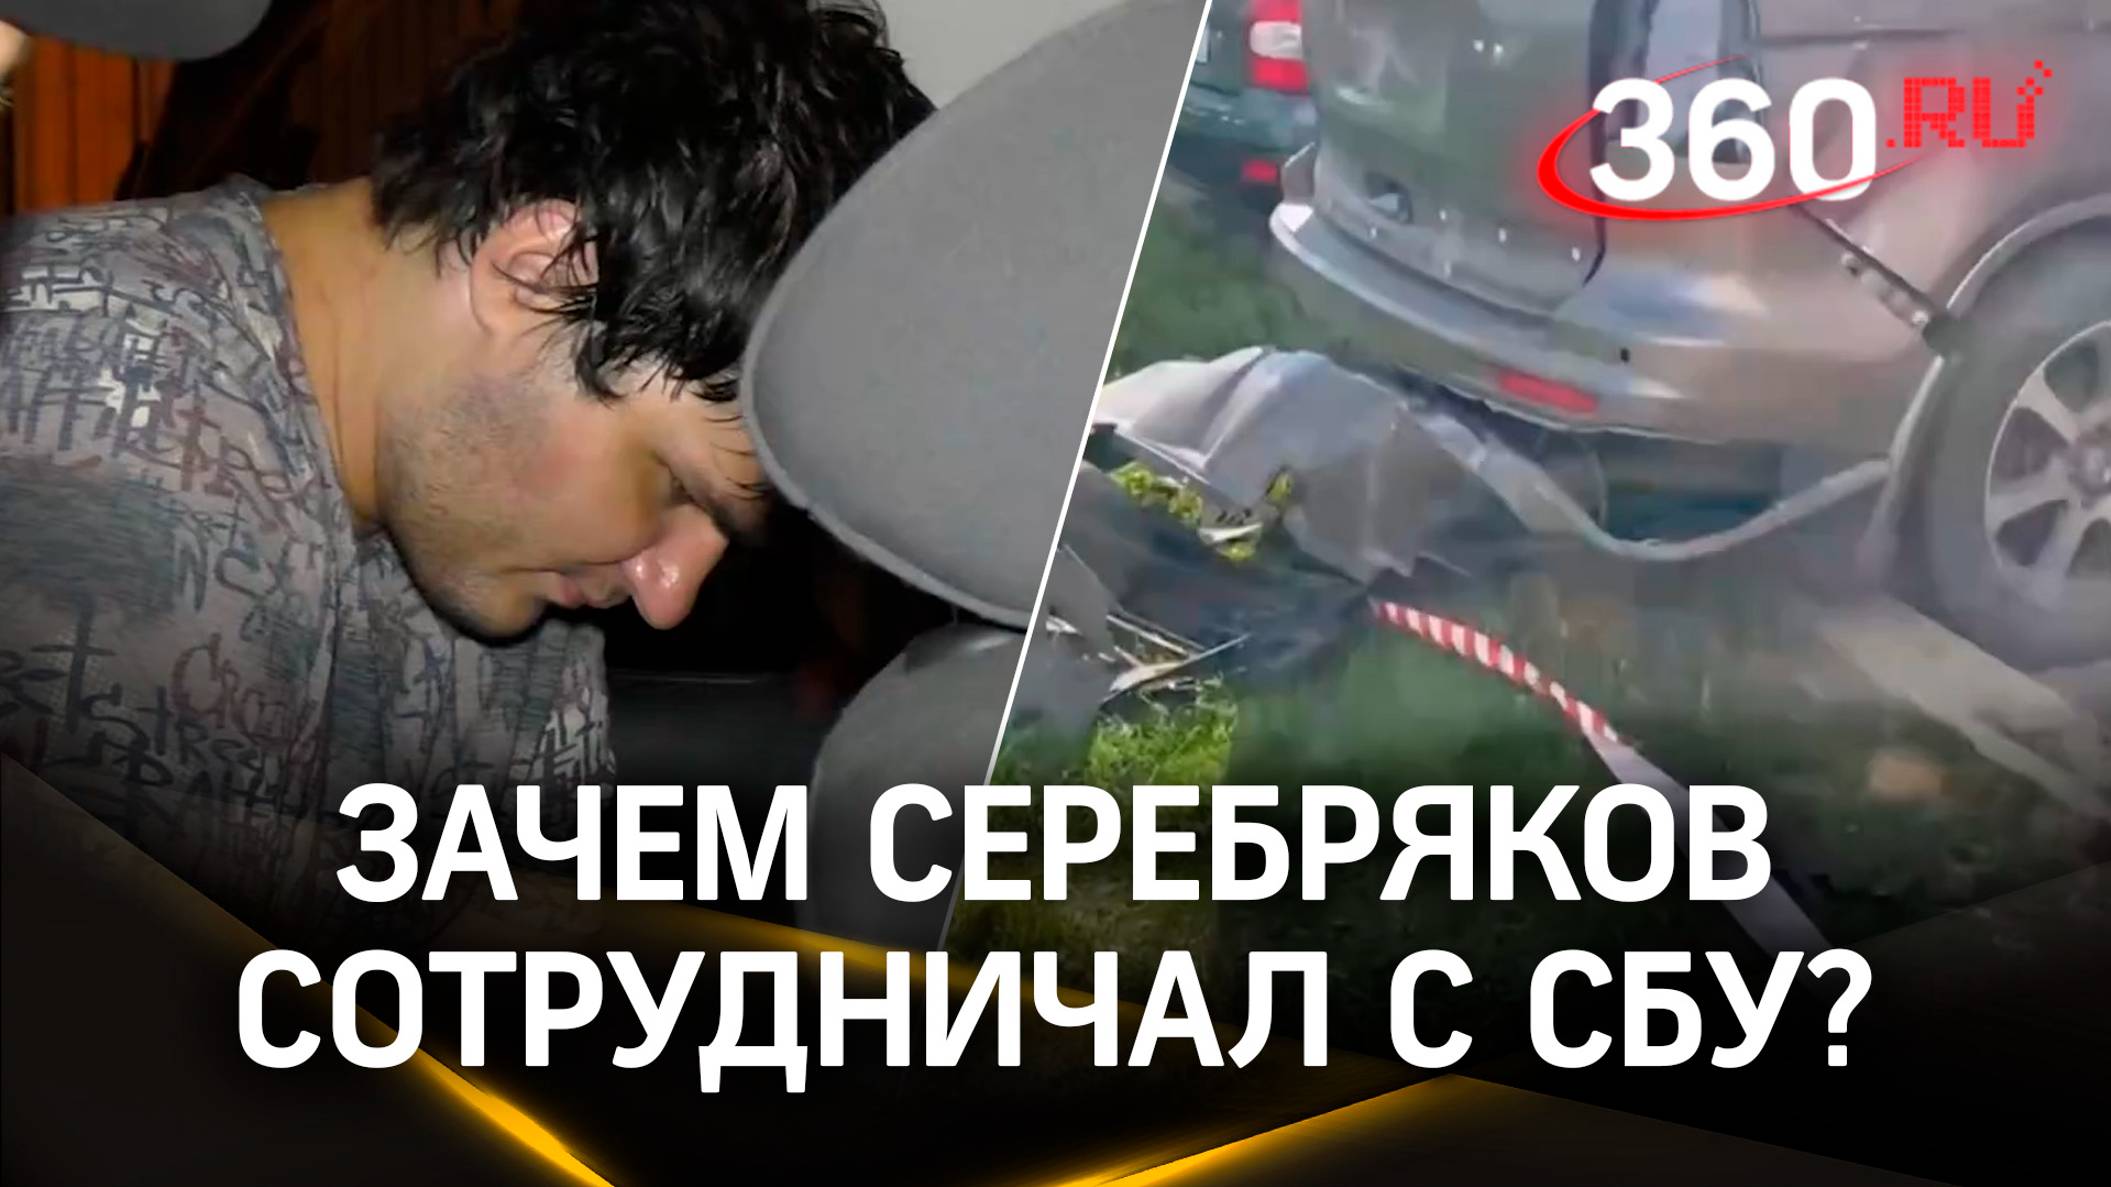 Подорвал авто в Москве по приказу СБУ за деньги и гражданство Украины. Допрос Серебрякова